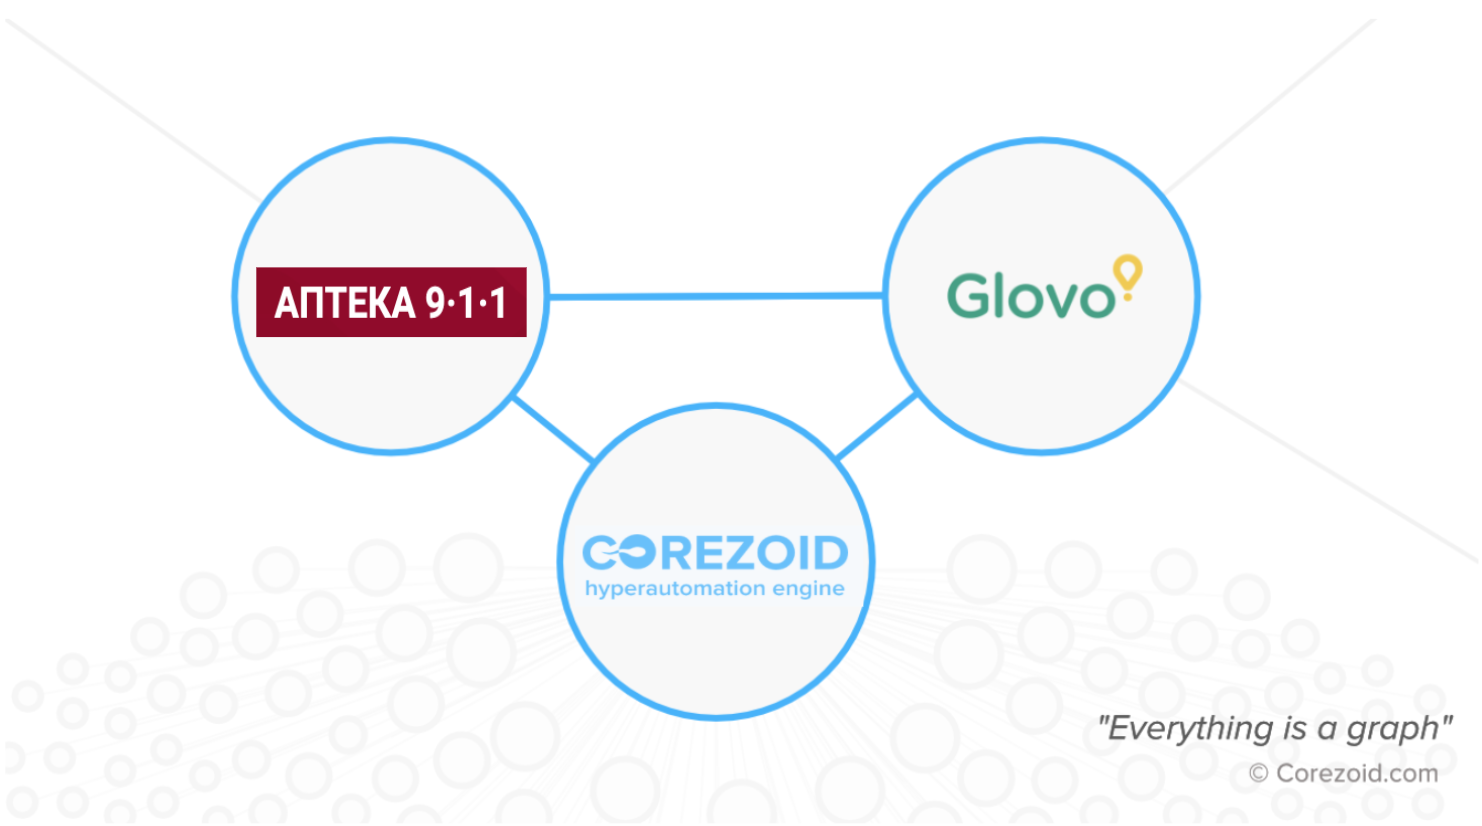 Glovo started partnership with "Pharmacy 911" based on Corezoid